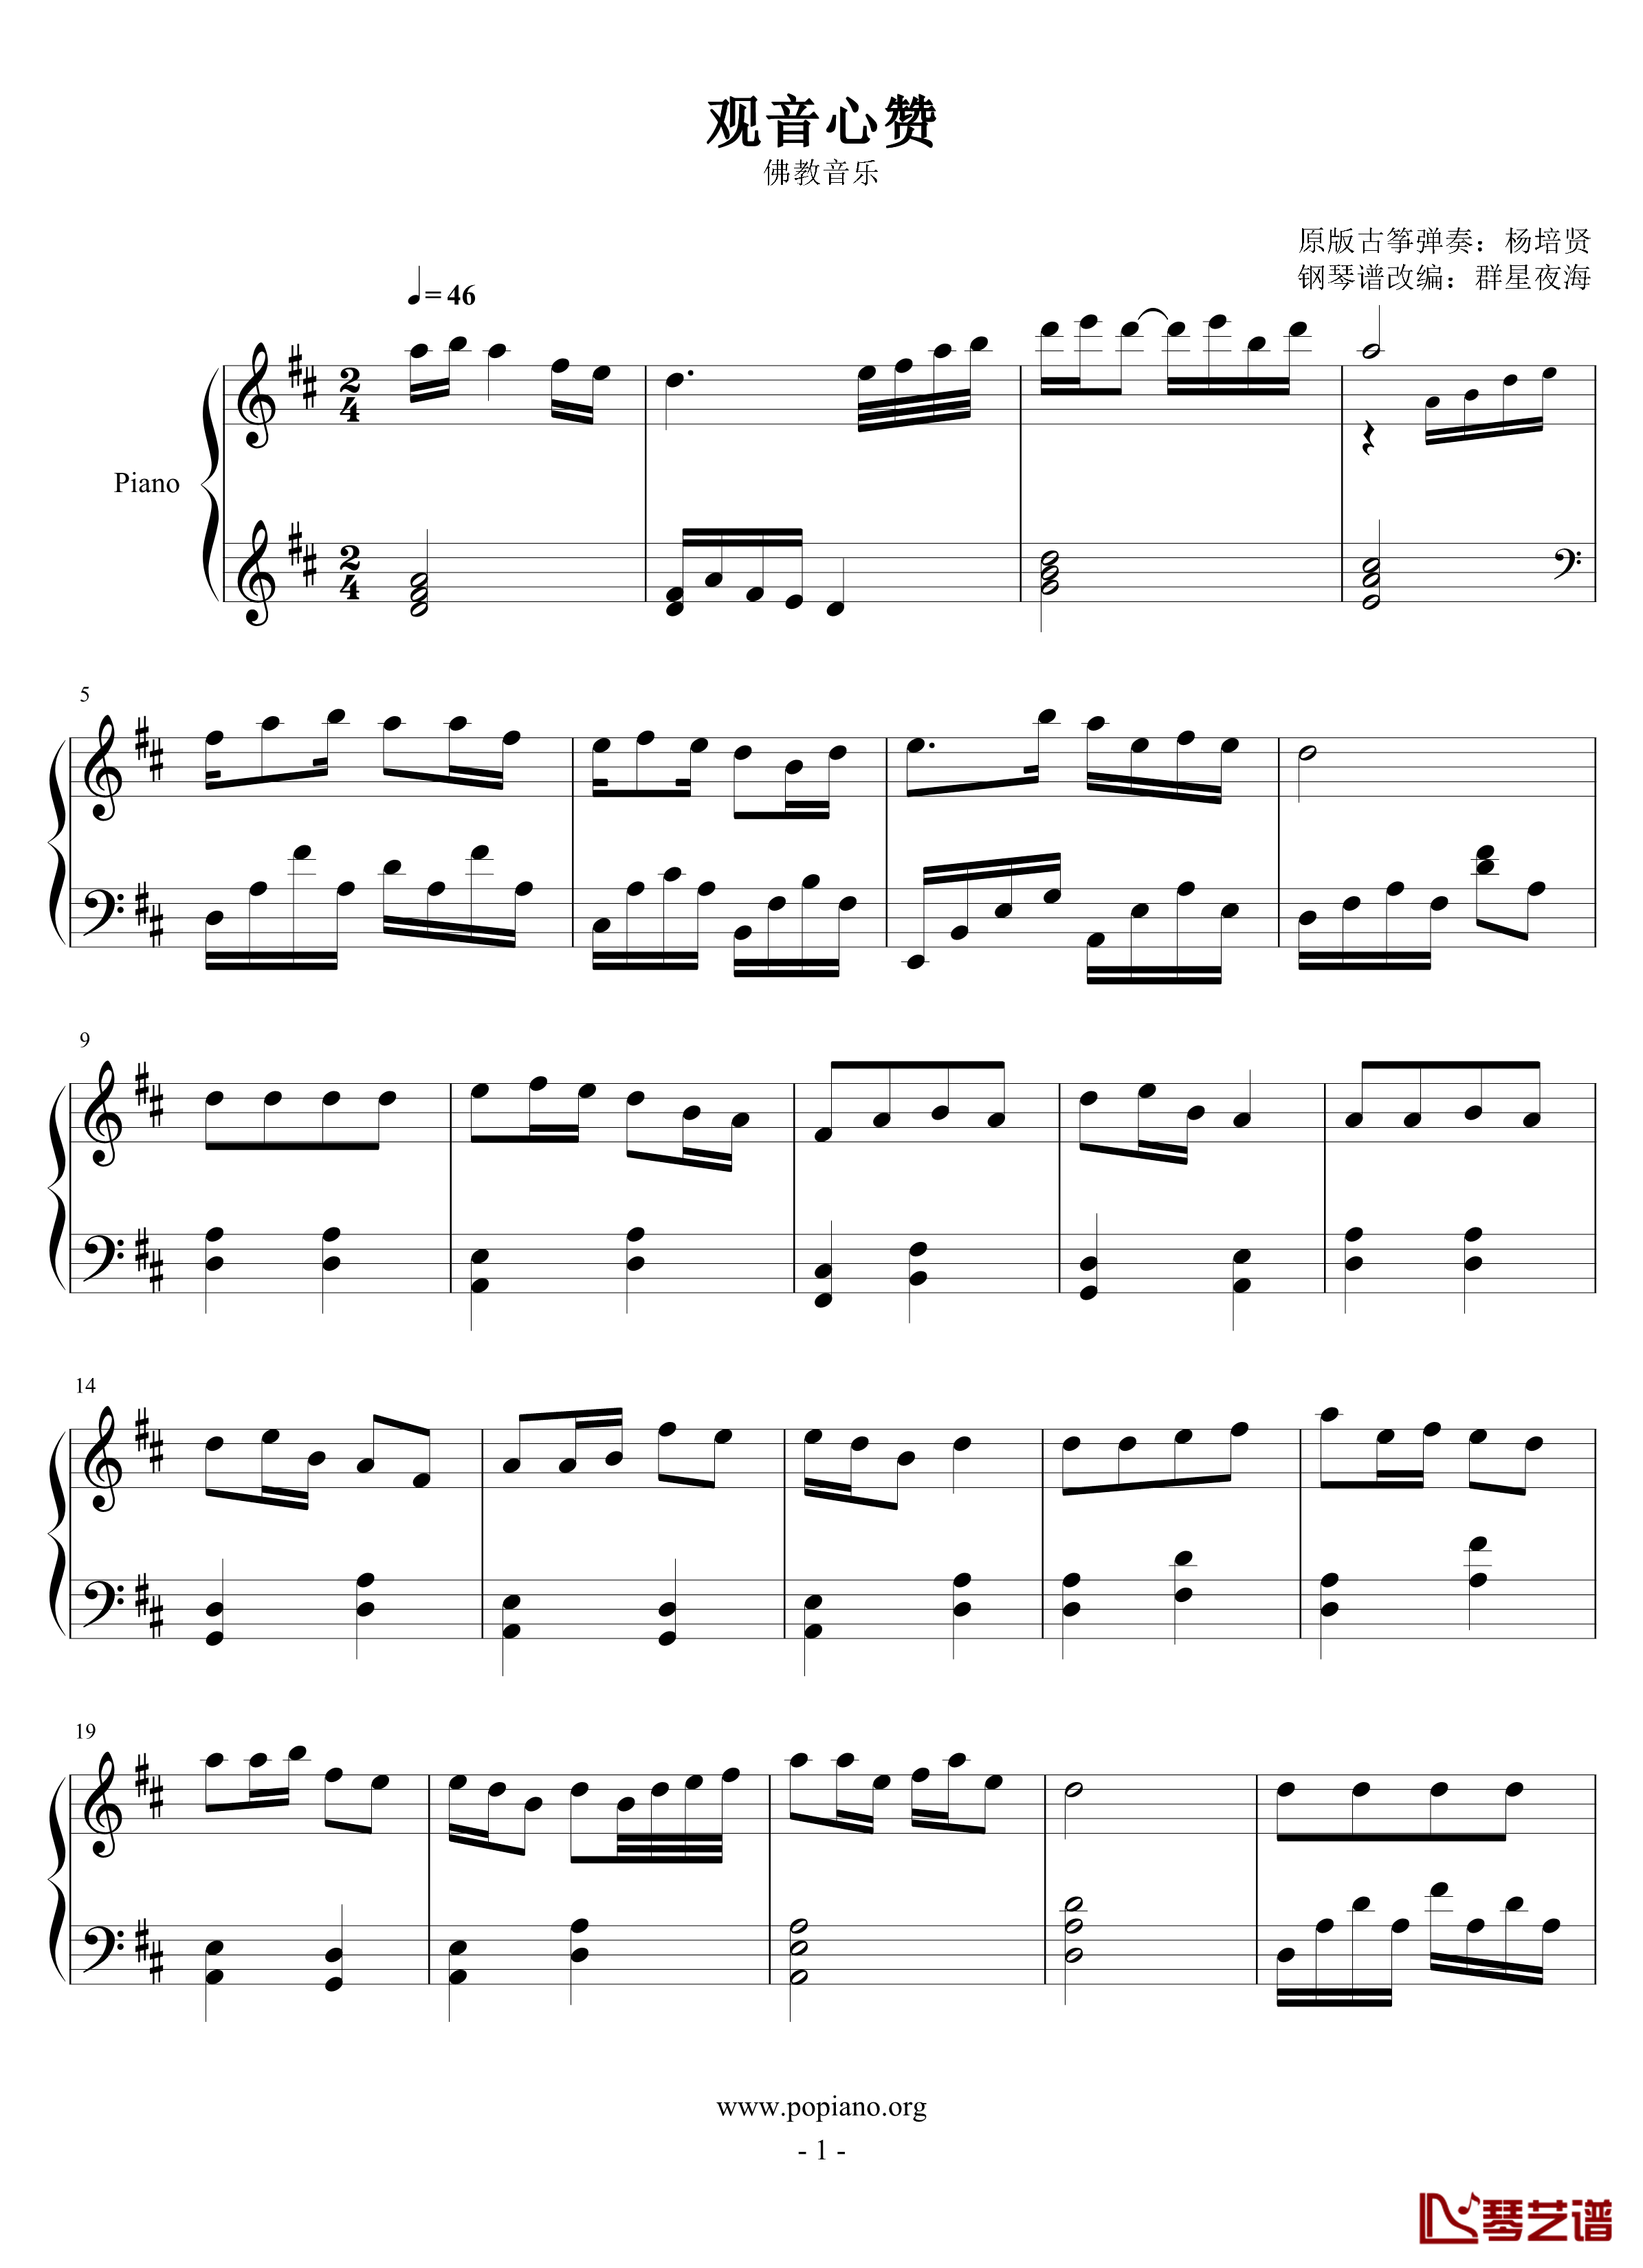 观音心赞钢琴谱-2.0完美版-佛教音乐1